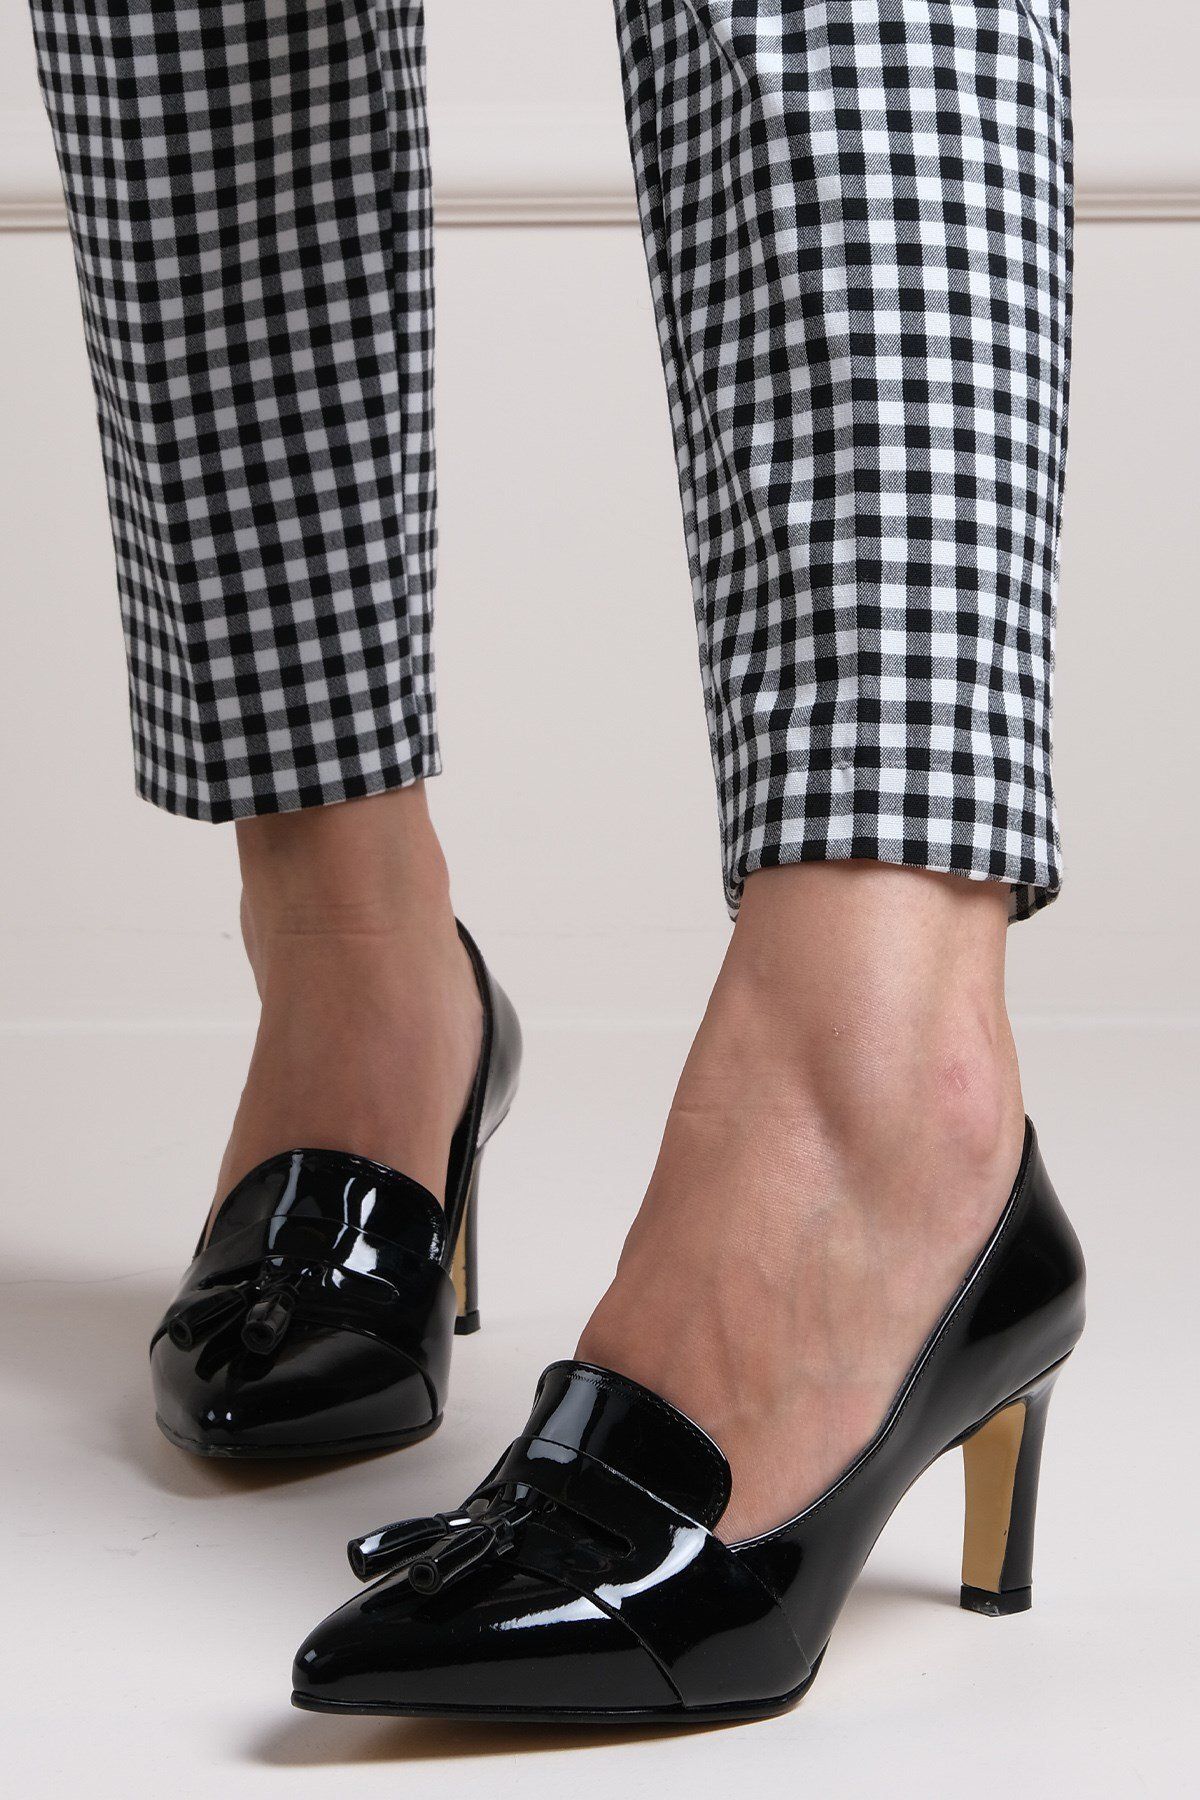 Mio Gusto Emma Siyah Renk Rugan Püskül Aksesuarlı Kadın Topuklu Ayakkabı